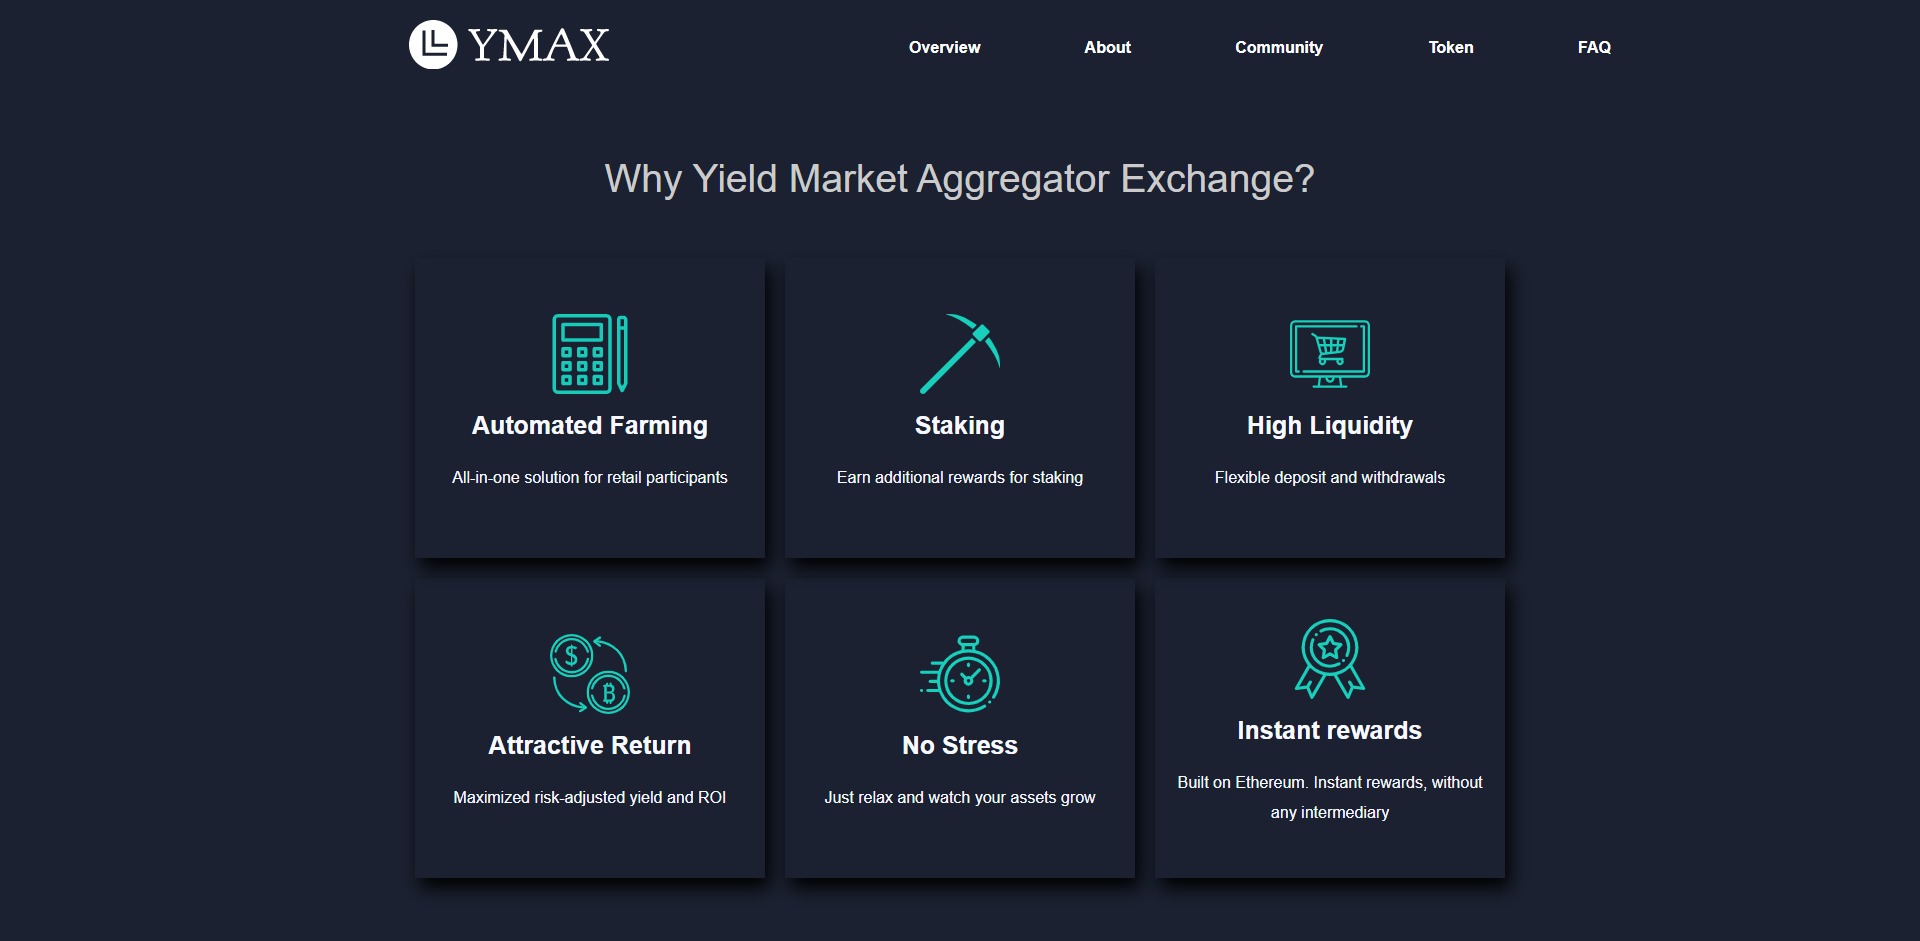 Ymax Price Prediction Fundamentals